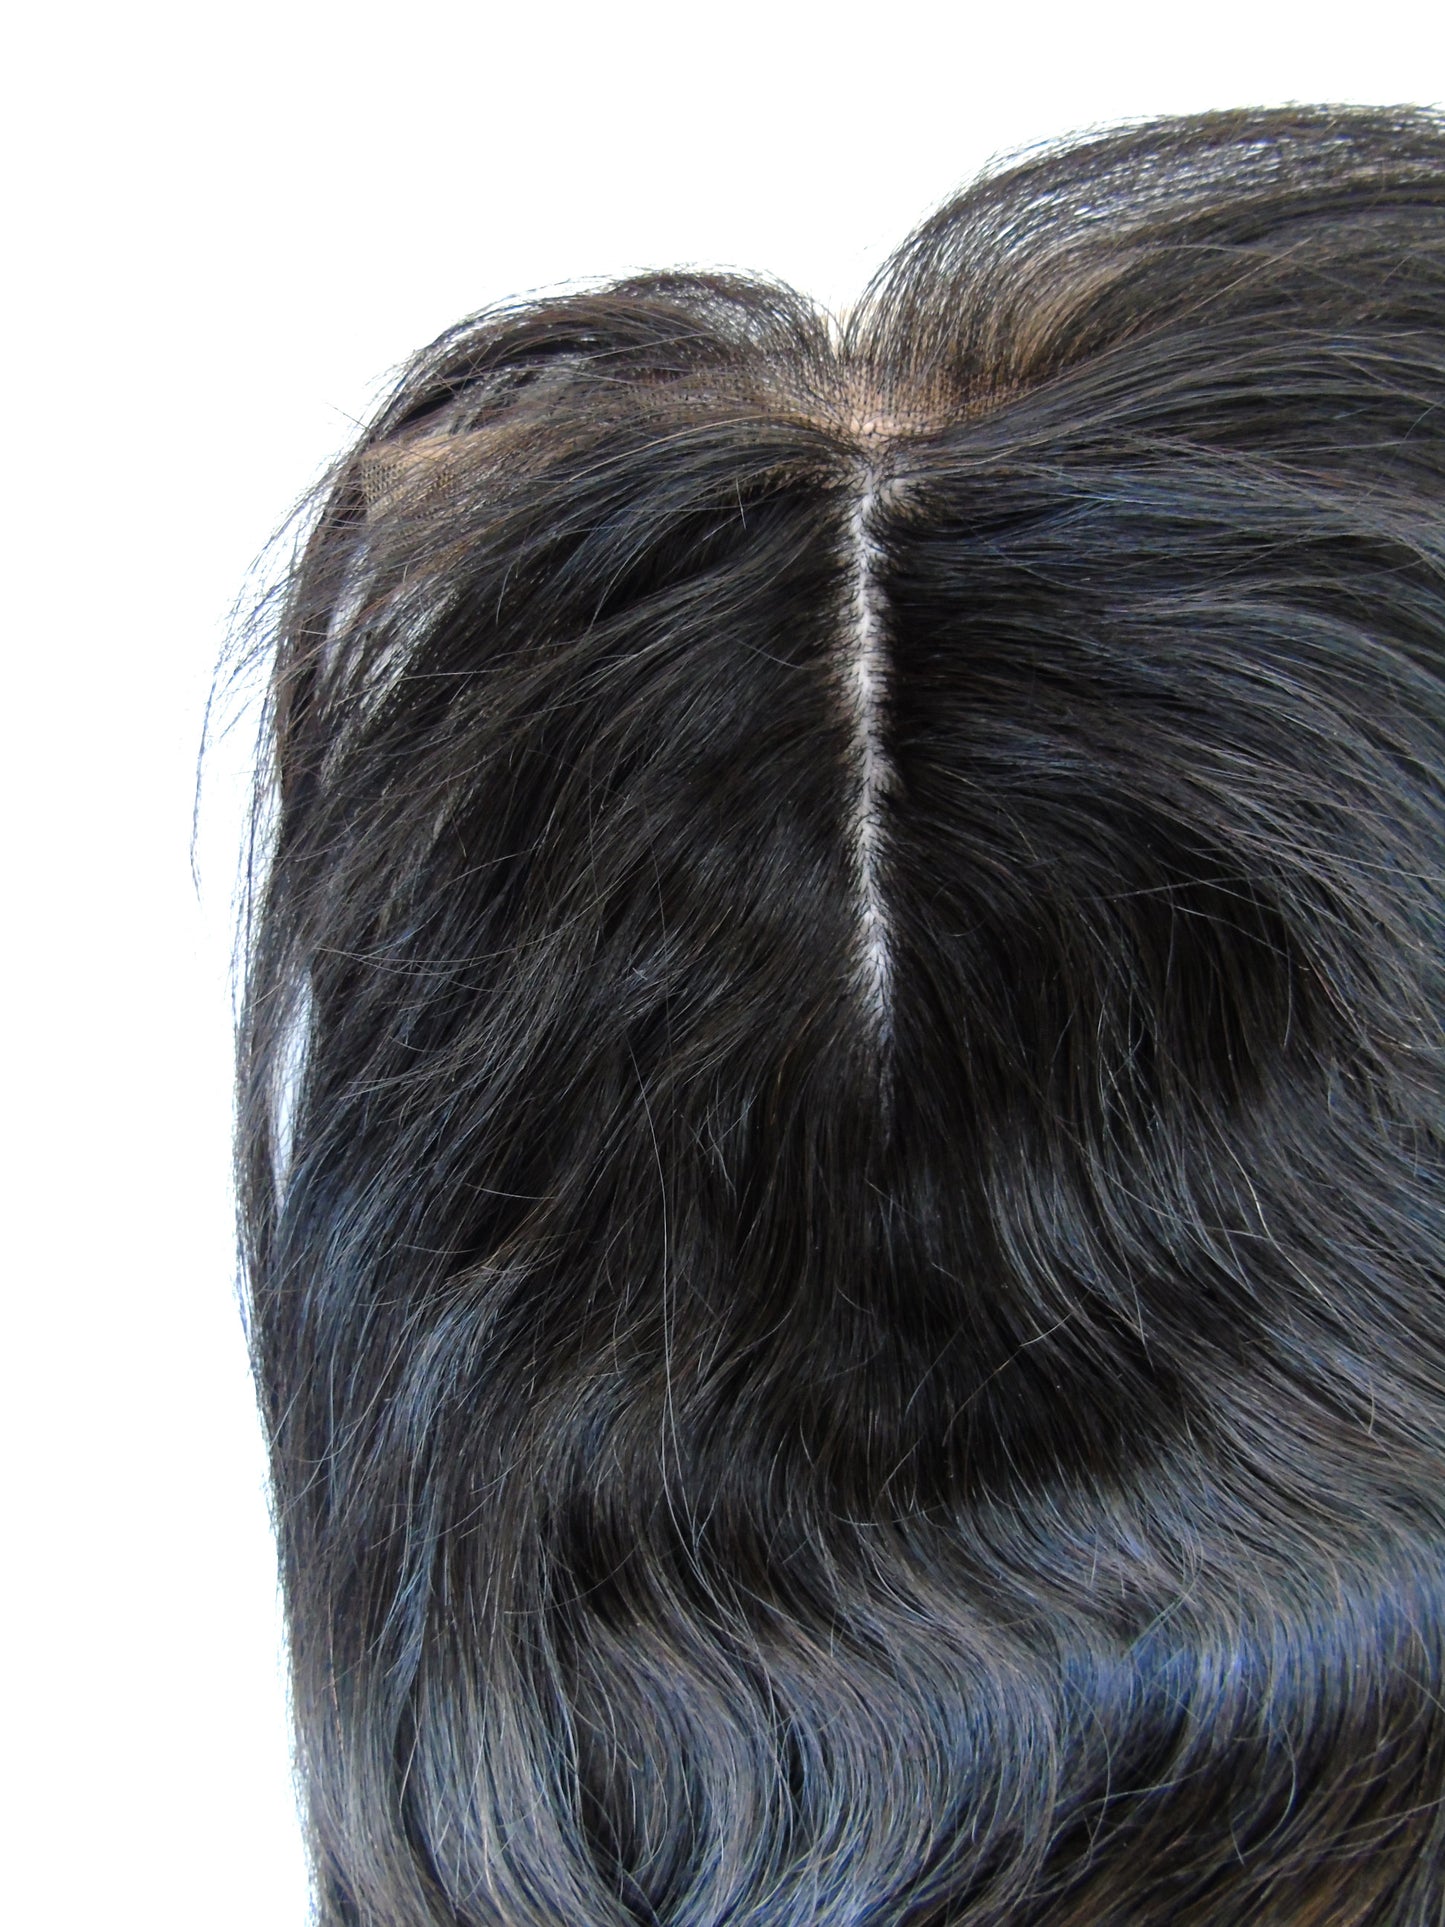 Brasilianischer Verschluss auf Seidenbasis, 15,2 x 22,9 cm, 25,4 cm, glatt – individuelle Auflistung – Virgin Hair & Beauty, die besten Haarverlängerungen, echtes Virgin-Menschenhaar.